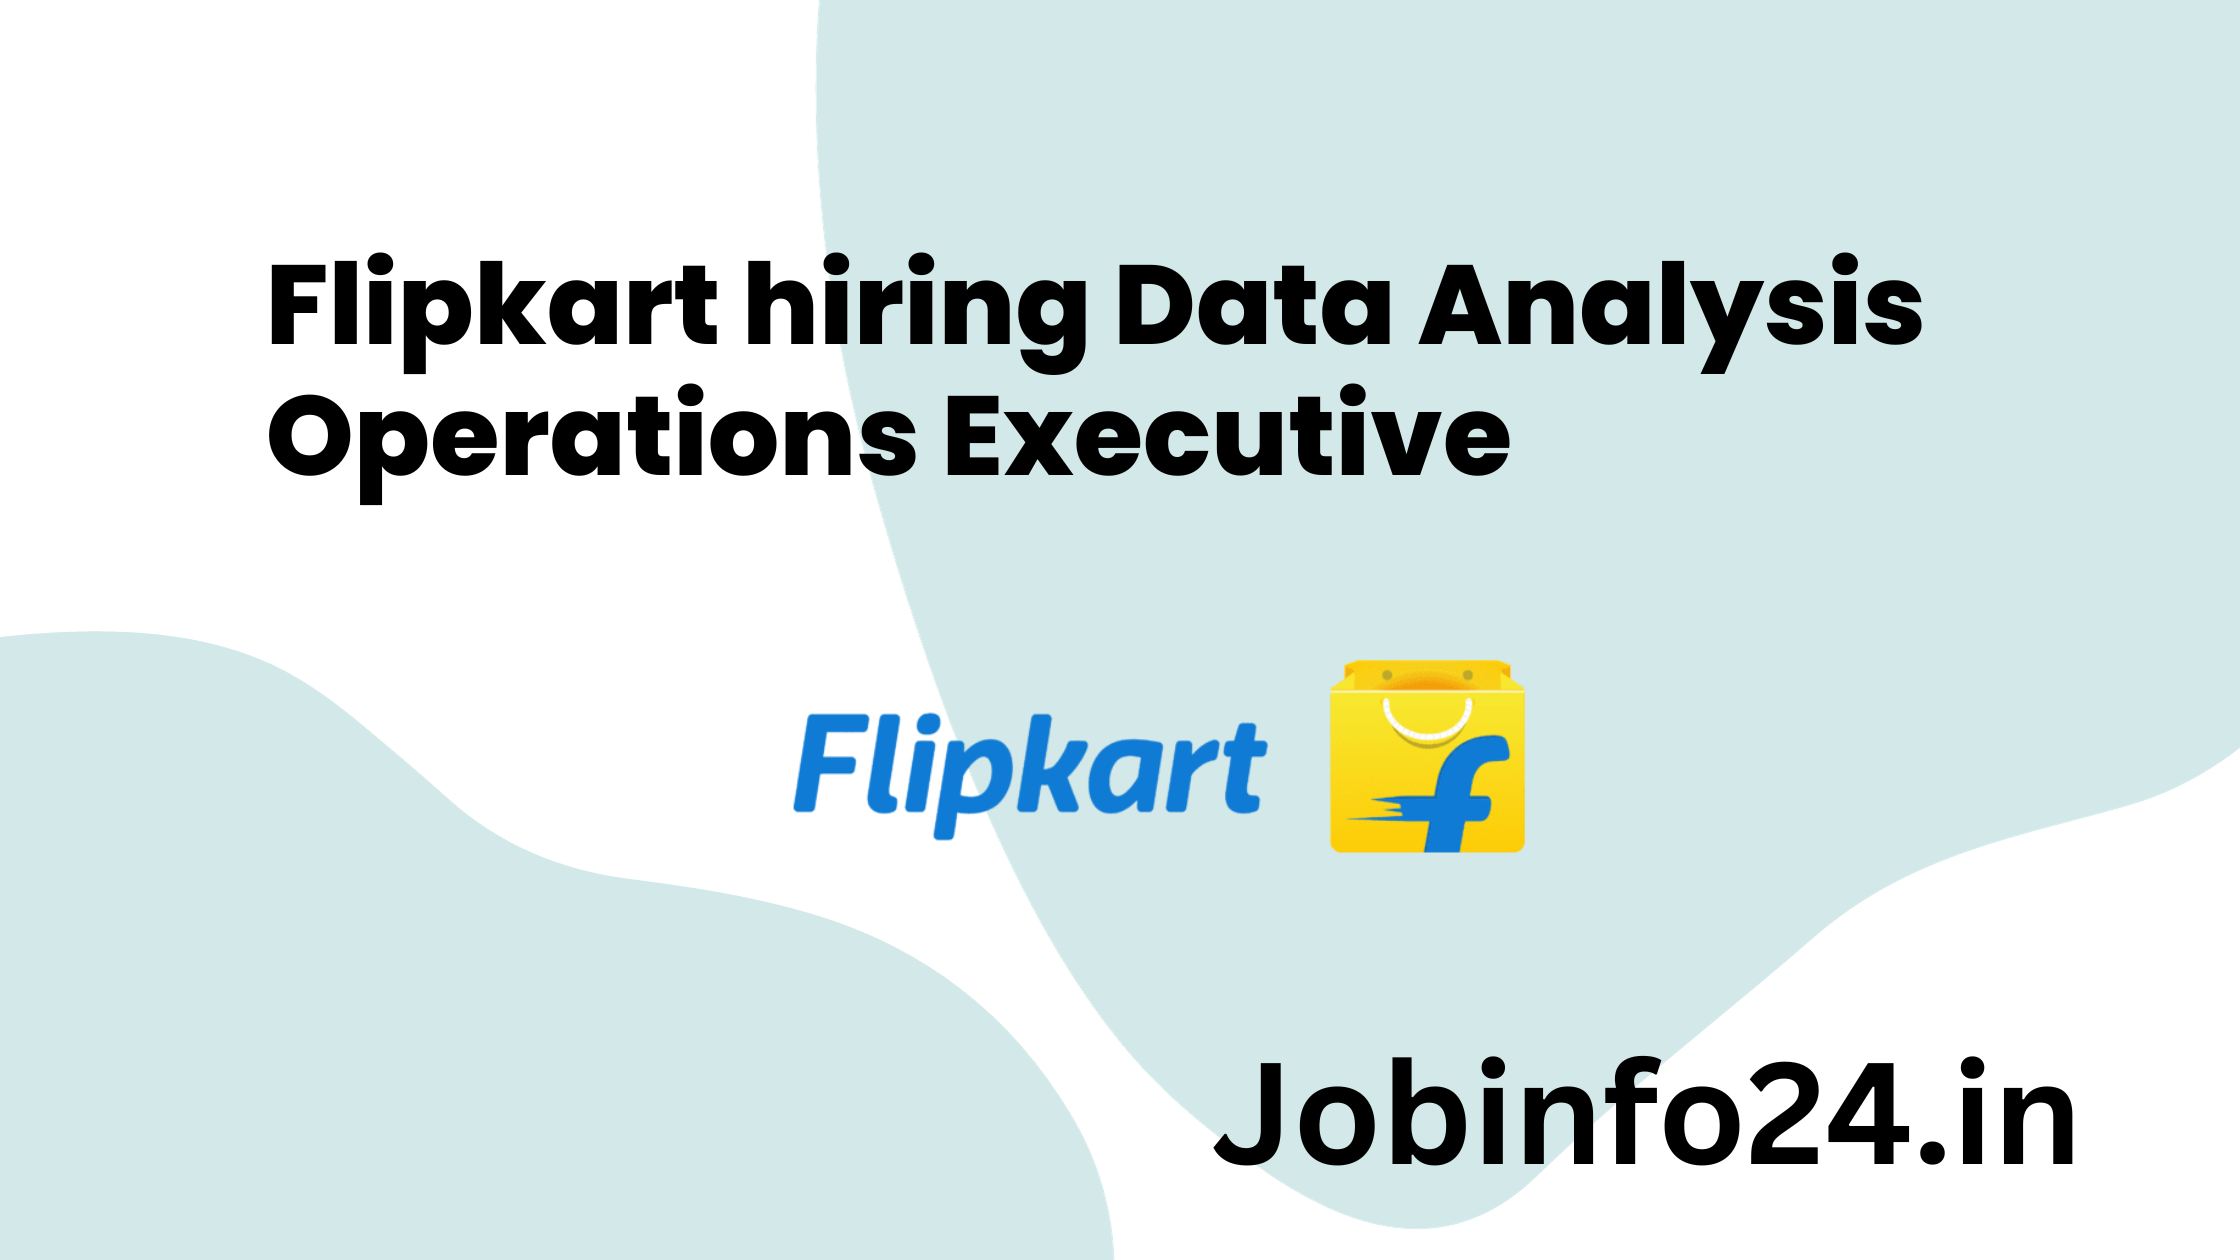 Flipkart hiring Data Analysis Operations Executive